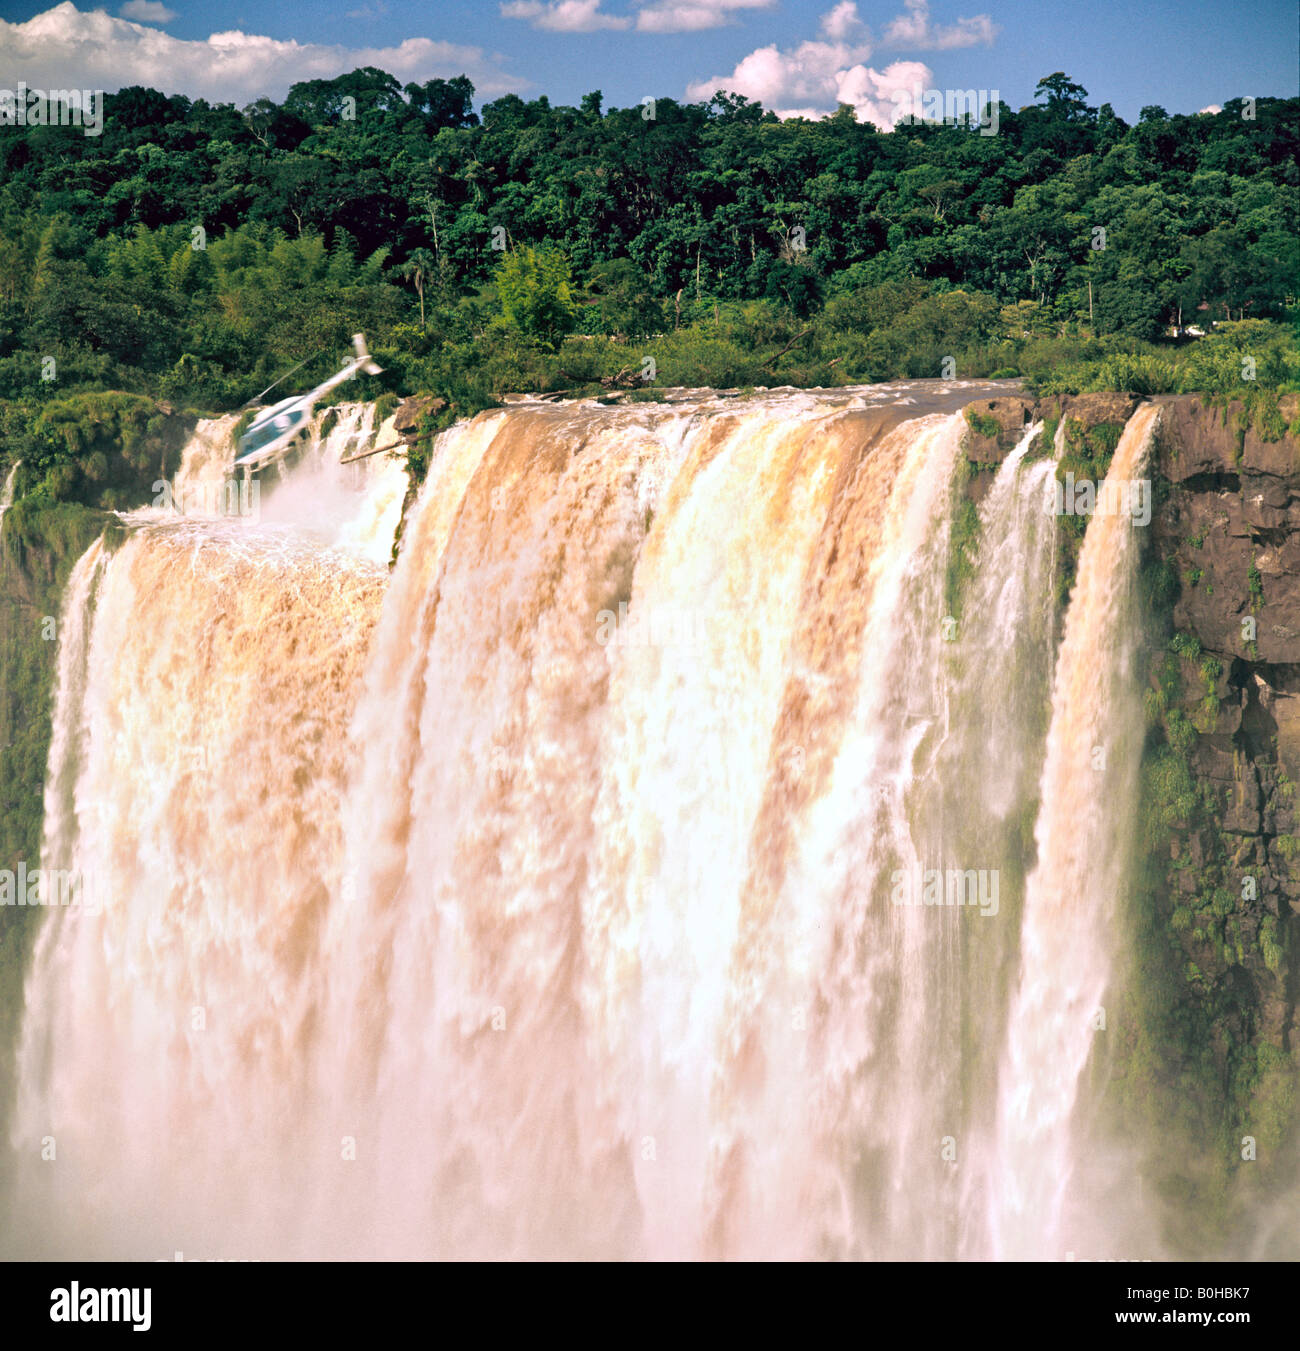 Hélicoptère au-dessus des chutes d'Iguaçu, Site du patrimoine mondial de l'UNESCO, l'Argentine, l'Amérique du Sud Banque D'Images